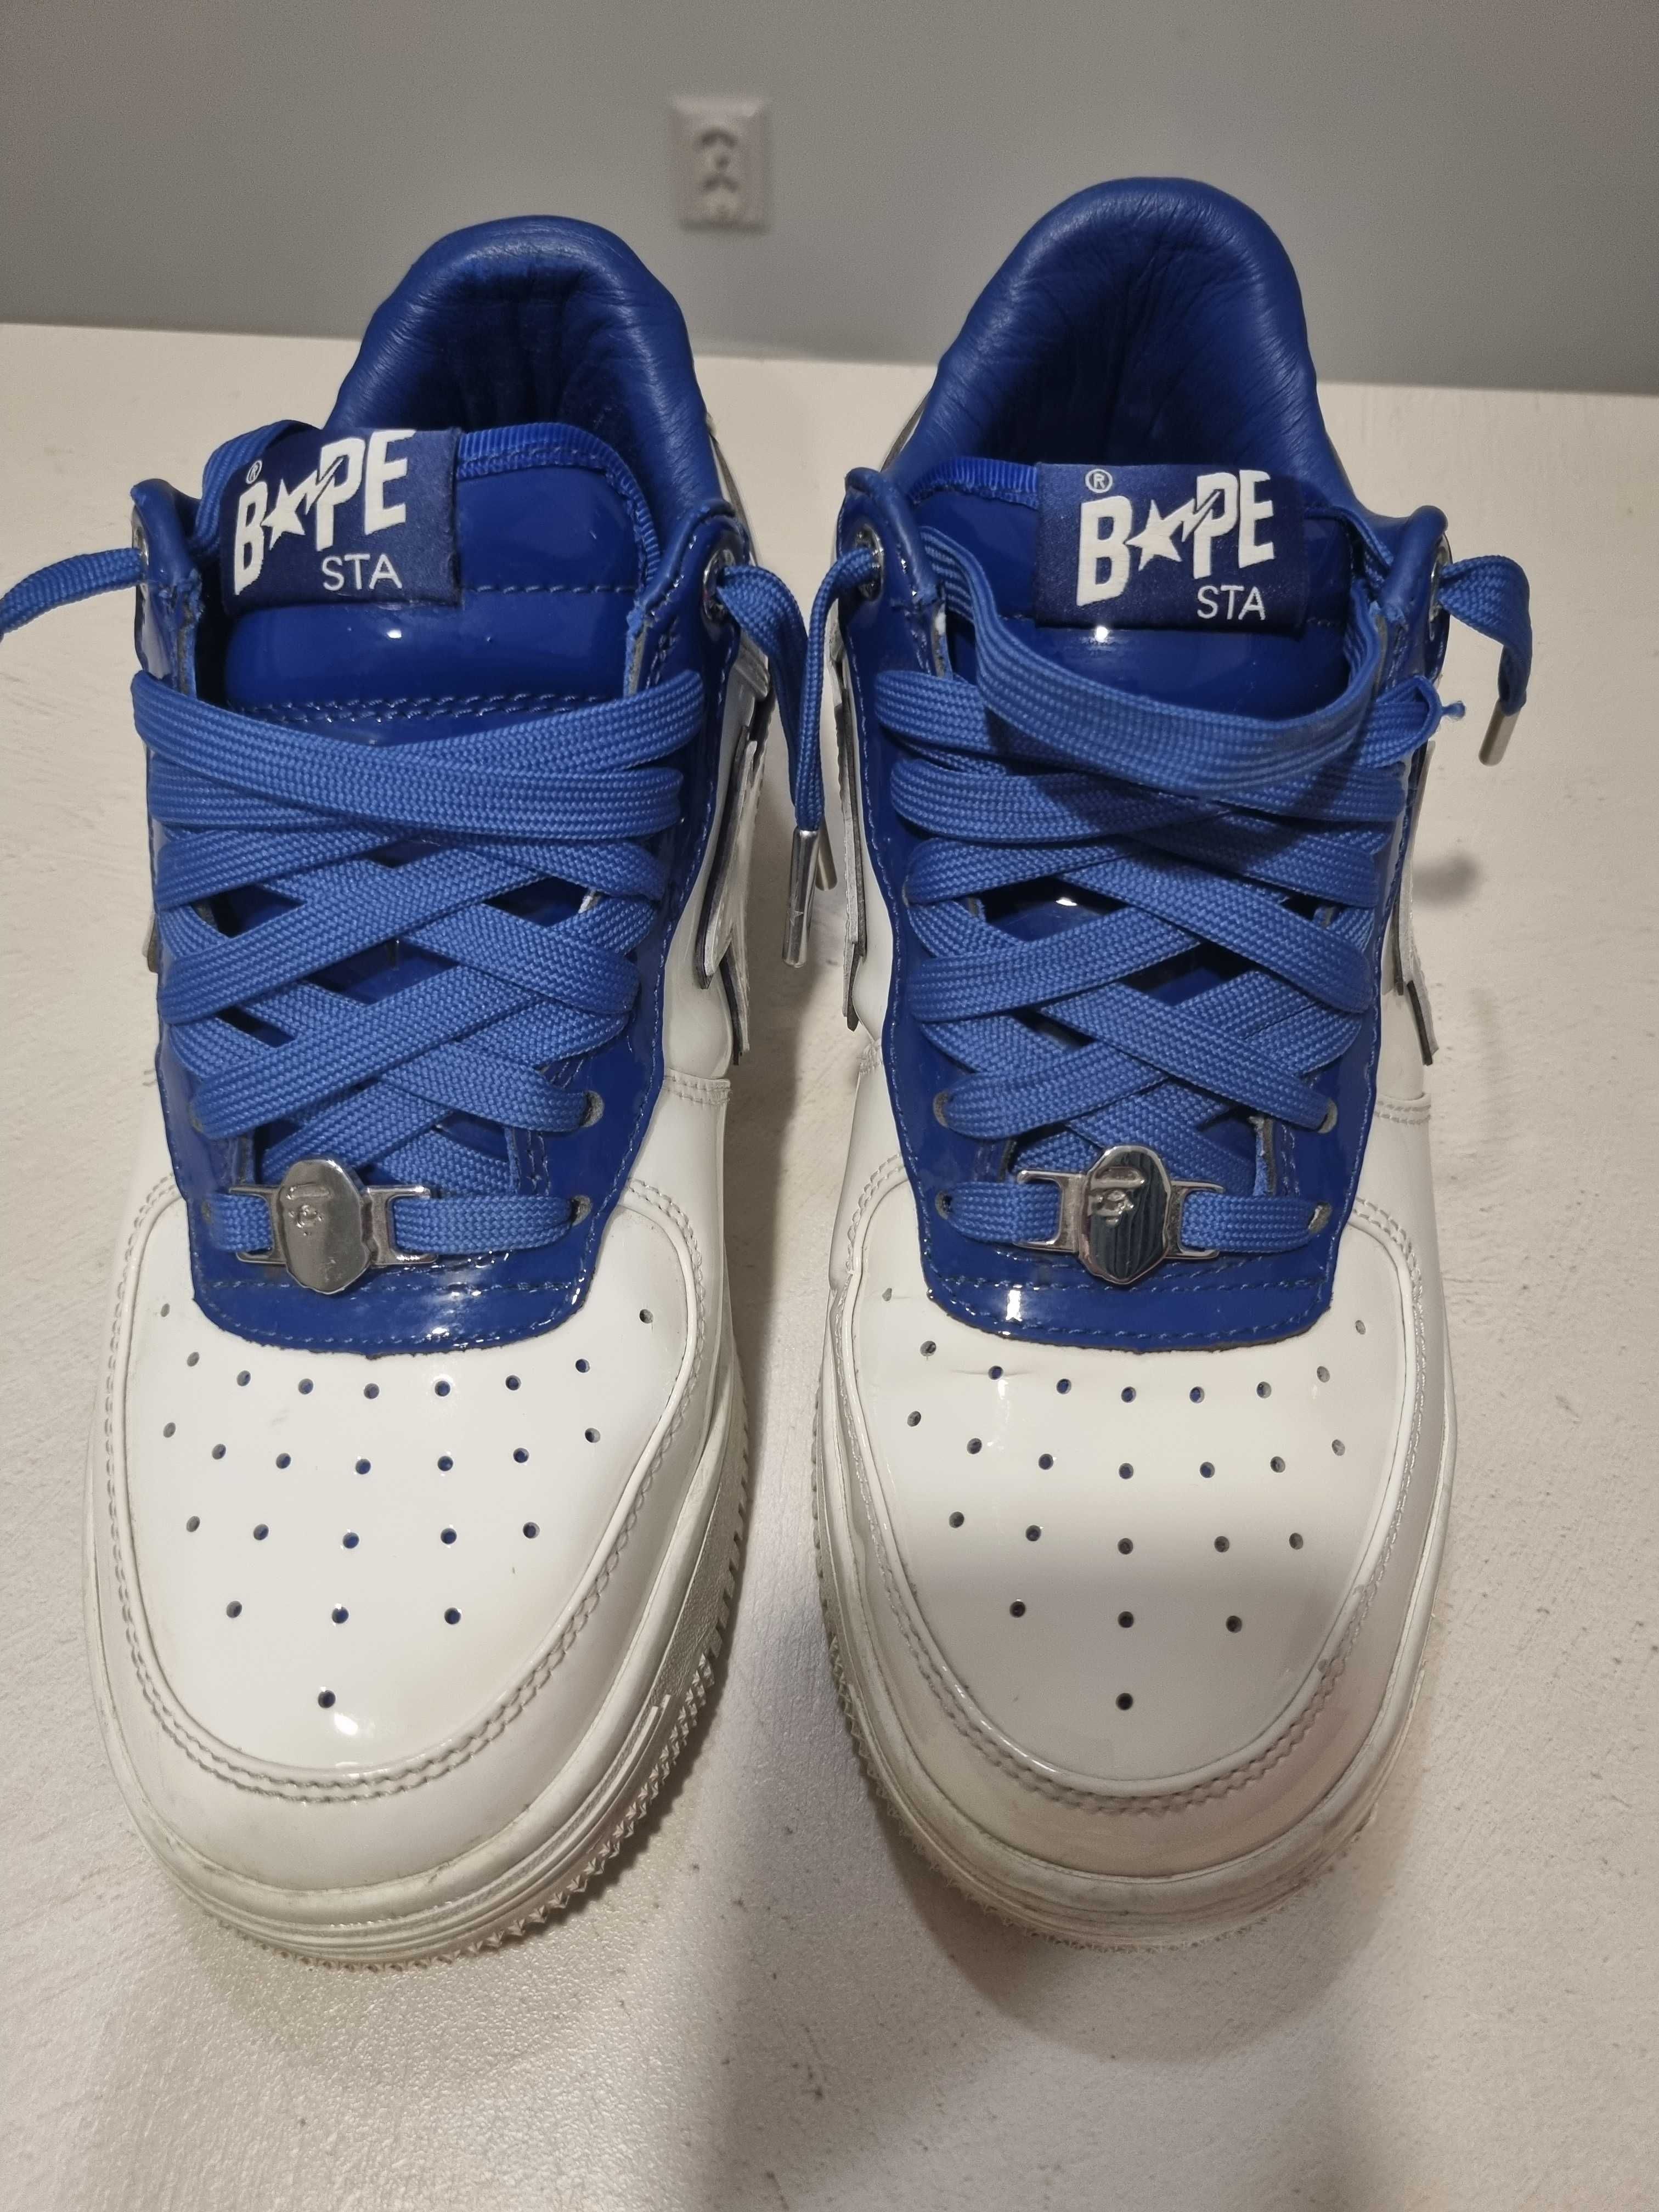 Pantofi Bape White Blue